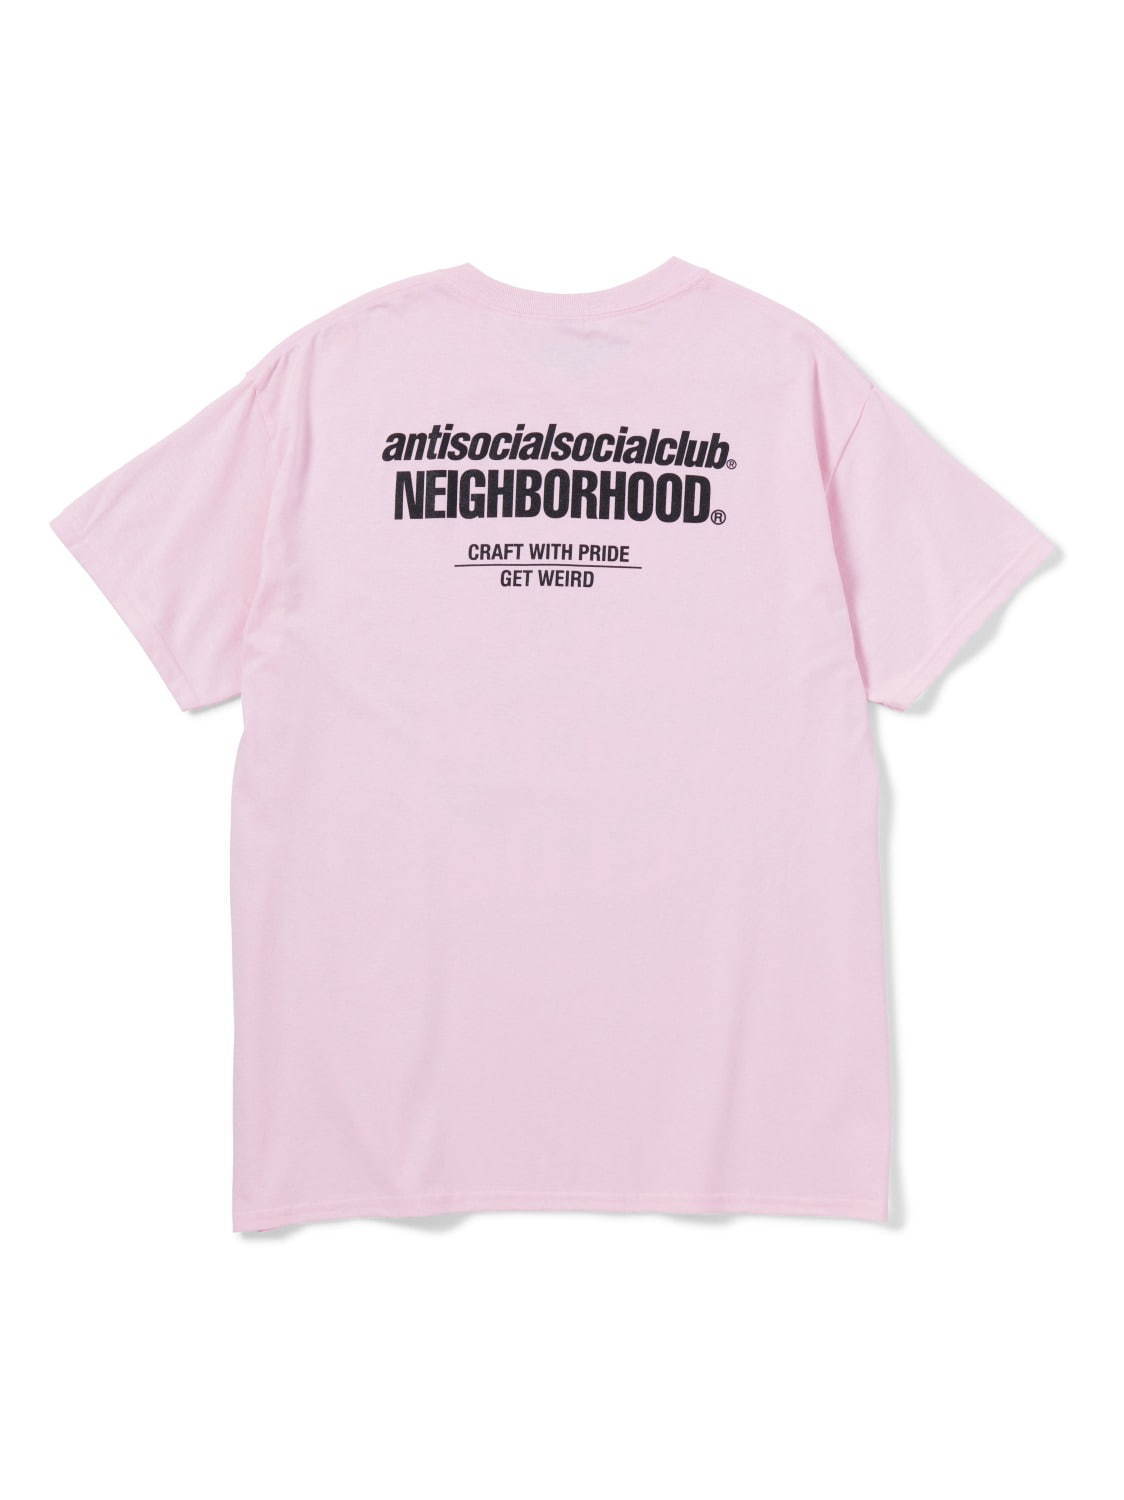 ネイバーフッド×アンチソーシャルソーシャルクラブ、“GET WEIRD”ロゴを配した原宿限定Tシャツ｜写真13